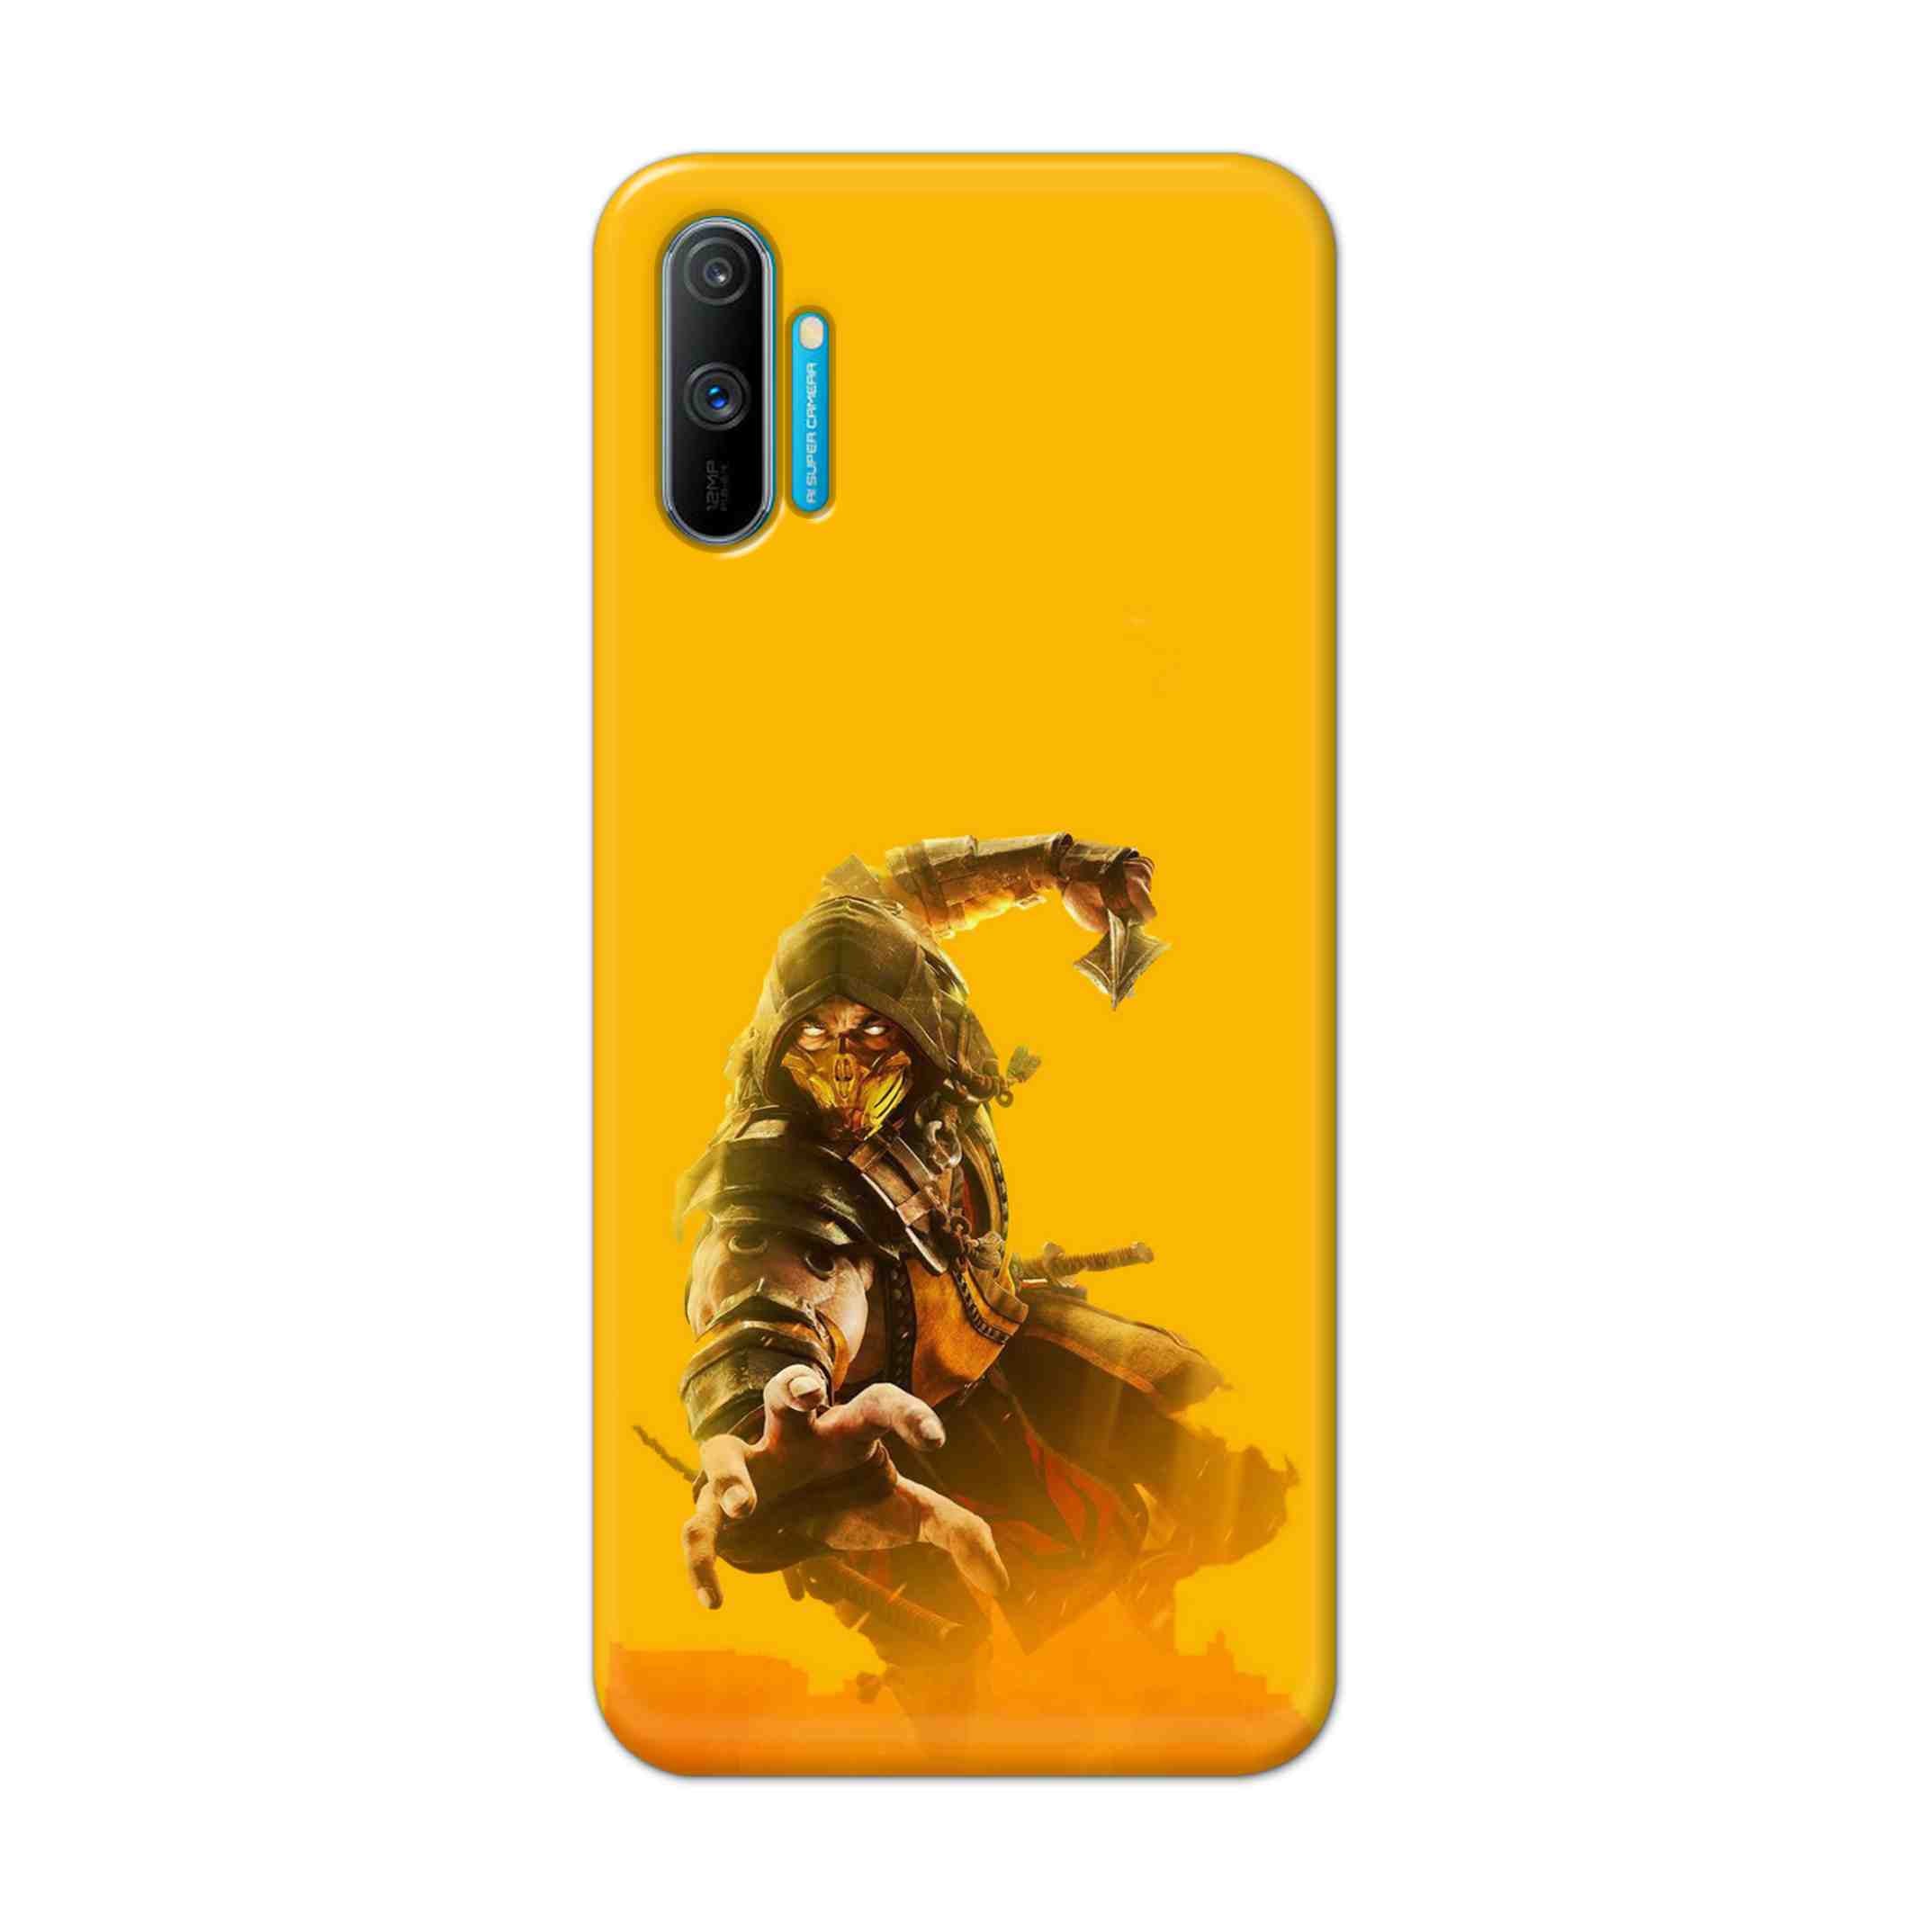 Buy Mortal Kombat Hard Back Mobile Phone Case Cover For Realme C3 Online